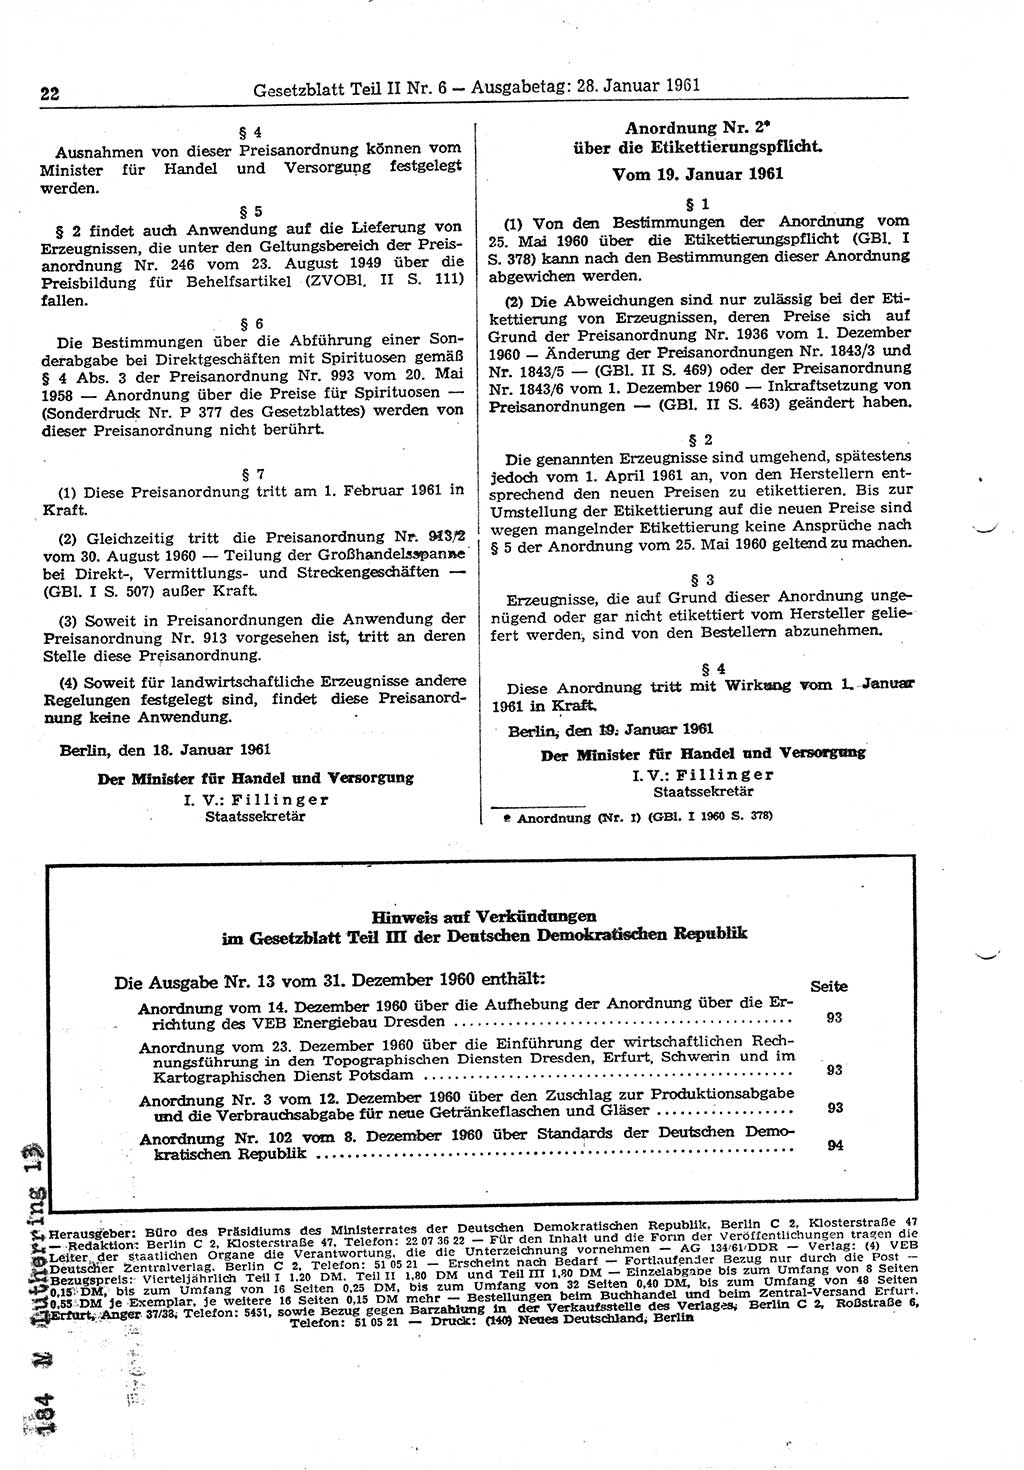 Gesetzblatt (GBl.) der Deutschen Demokratischen Republik (DDR) Teil ⅠⅠ 1961, Seite 22 (GBl. DDR ⅠⅠ 1961, S. 22)